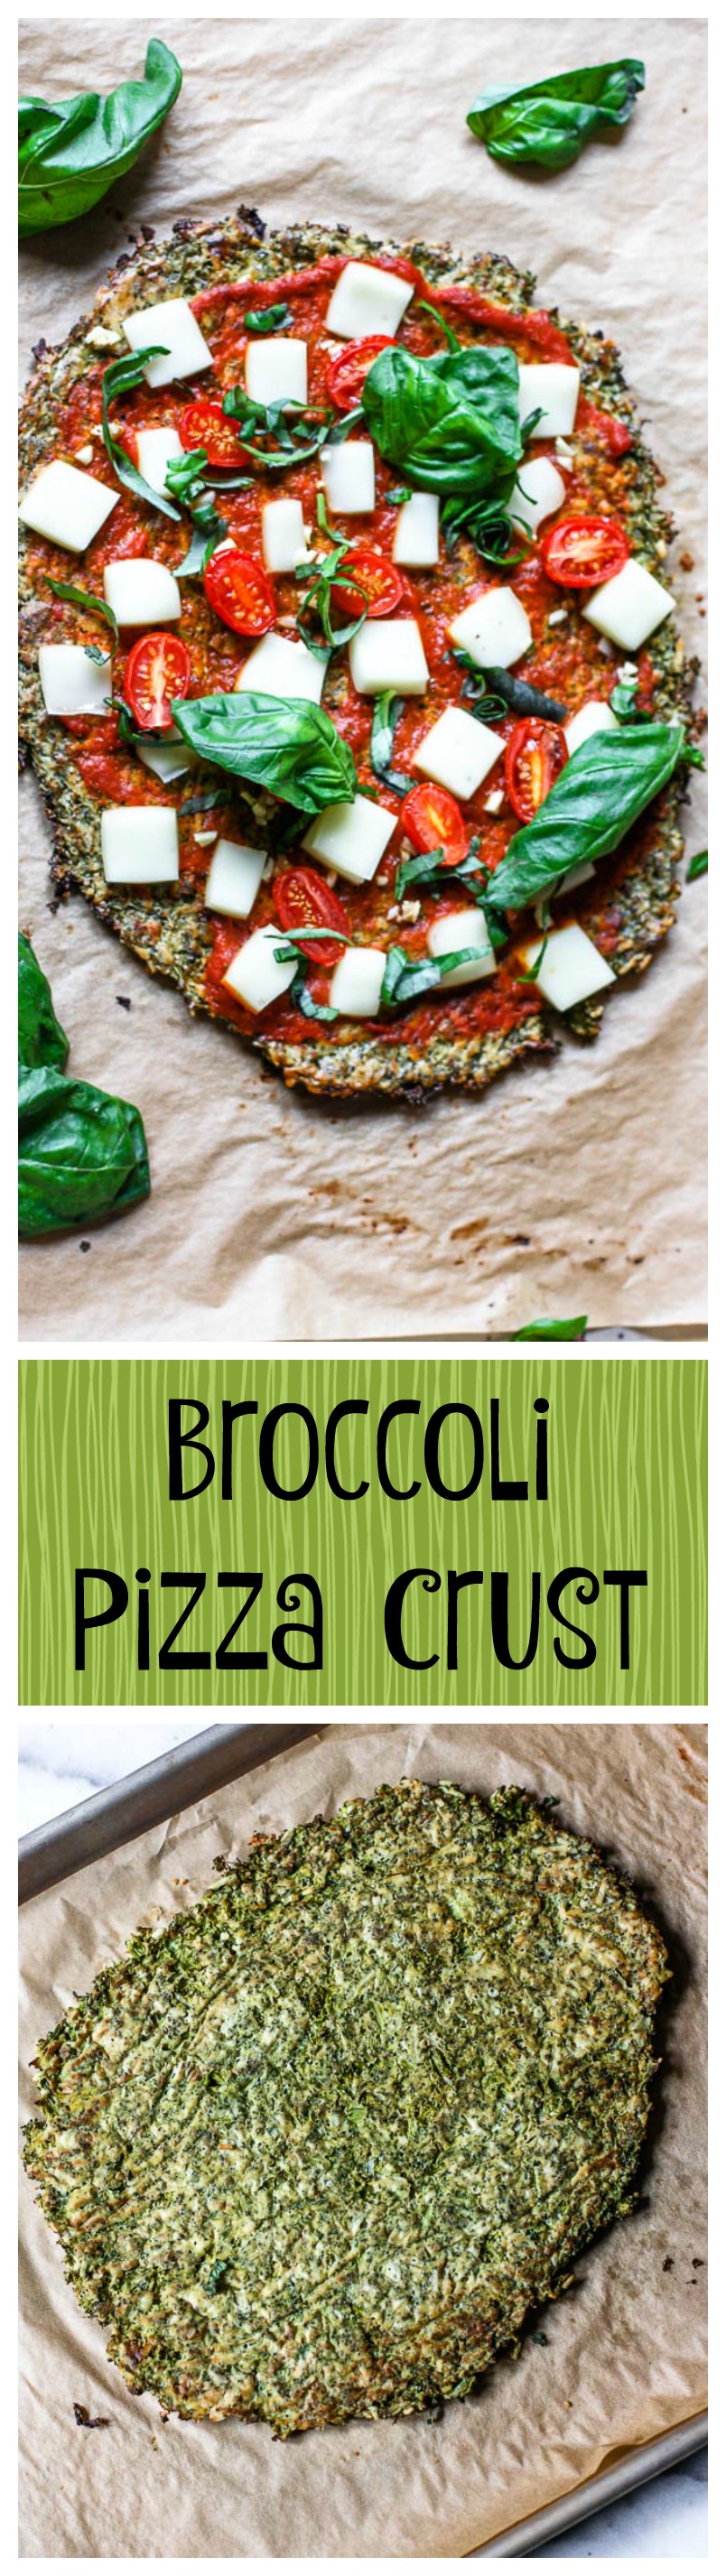 broccoli pizza crust